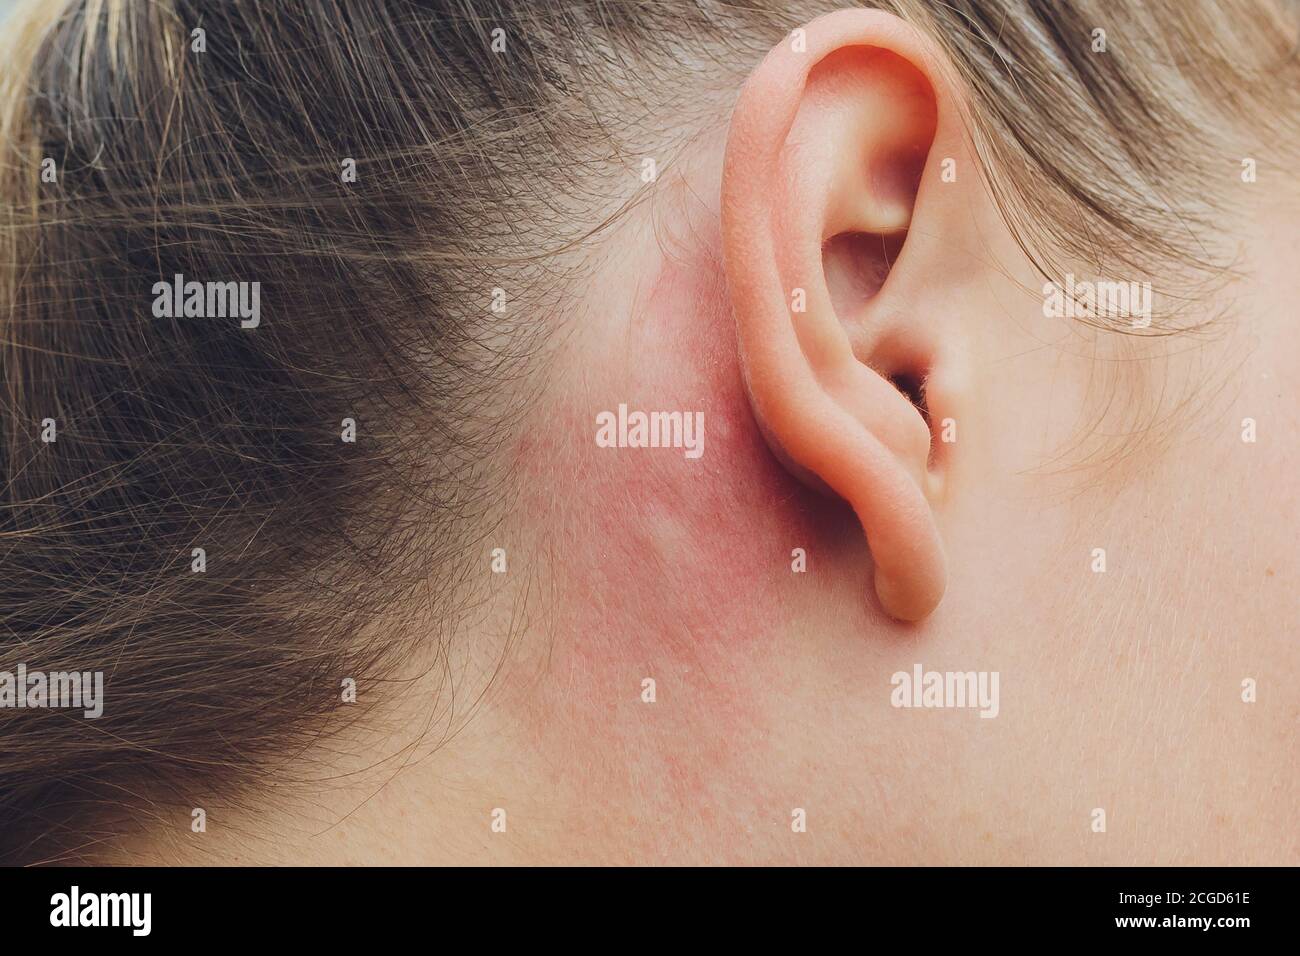 Réaction allergique de la peau sur l'homme derrière l'oreille provoquée par  les insectes staphylinidae, brûlures sur la peau Photo Stock - Alamy